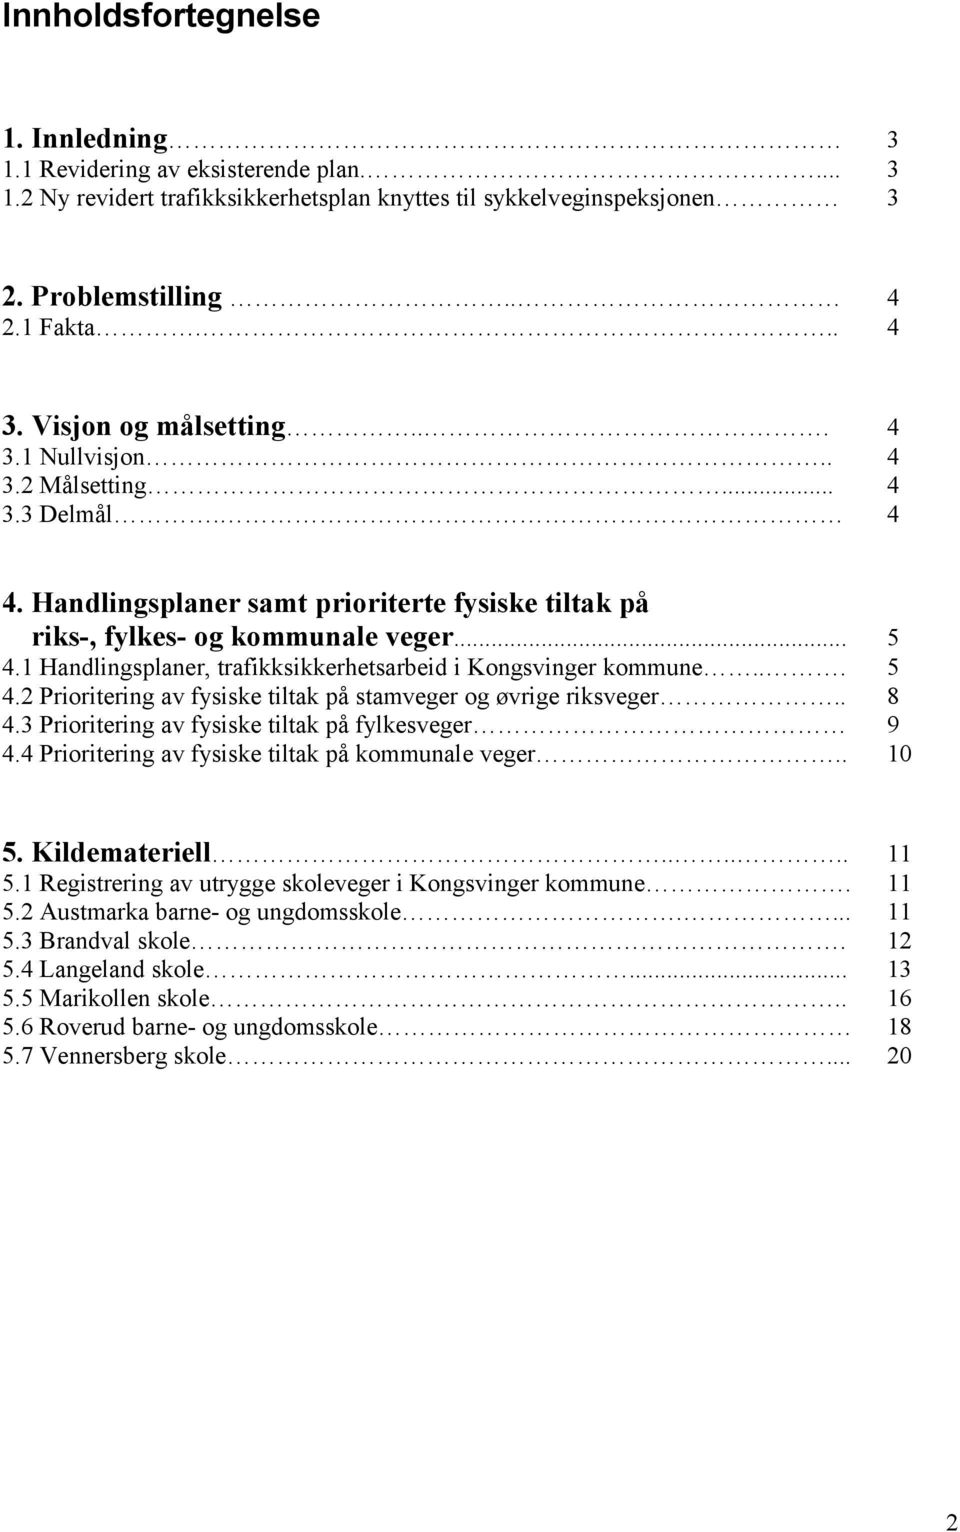 1 Handlingsplaner, trafikksikkerhetsarbeid i Kongsvinger kommune... 5 4.2 Prioritering av fysiske tiltak på stamveger og øvrige riksveger.. 8 4.3 Prioritering av fysiske tiltak på fylkesveger 9 4.